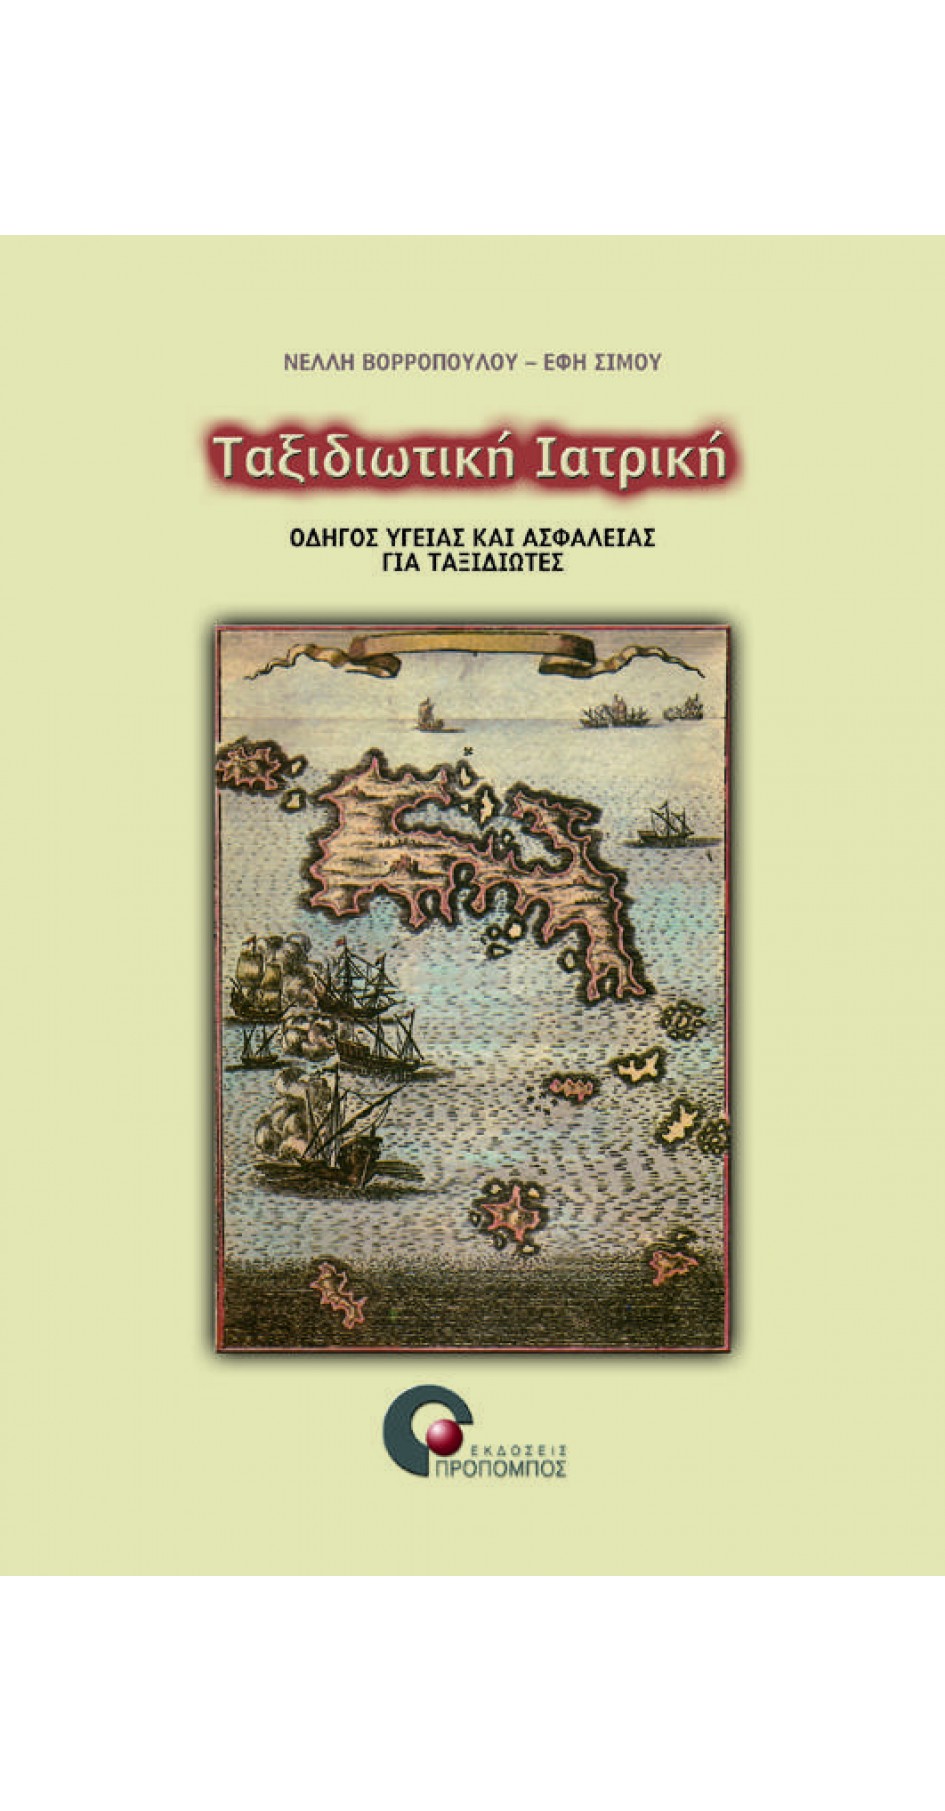 Ταξιδιωτική ιατρική: Οδηγός υγείας και ασφάλειας για ταξιδιώτες (book in Greek)